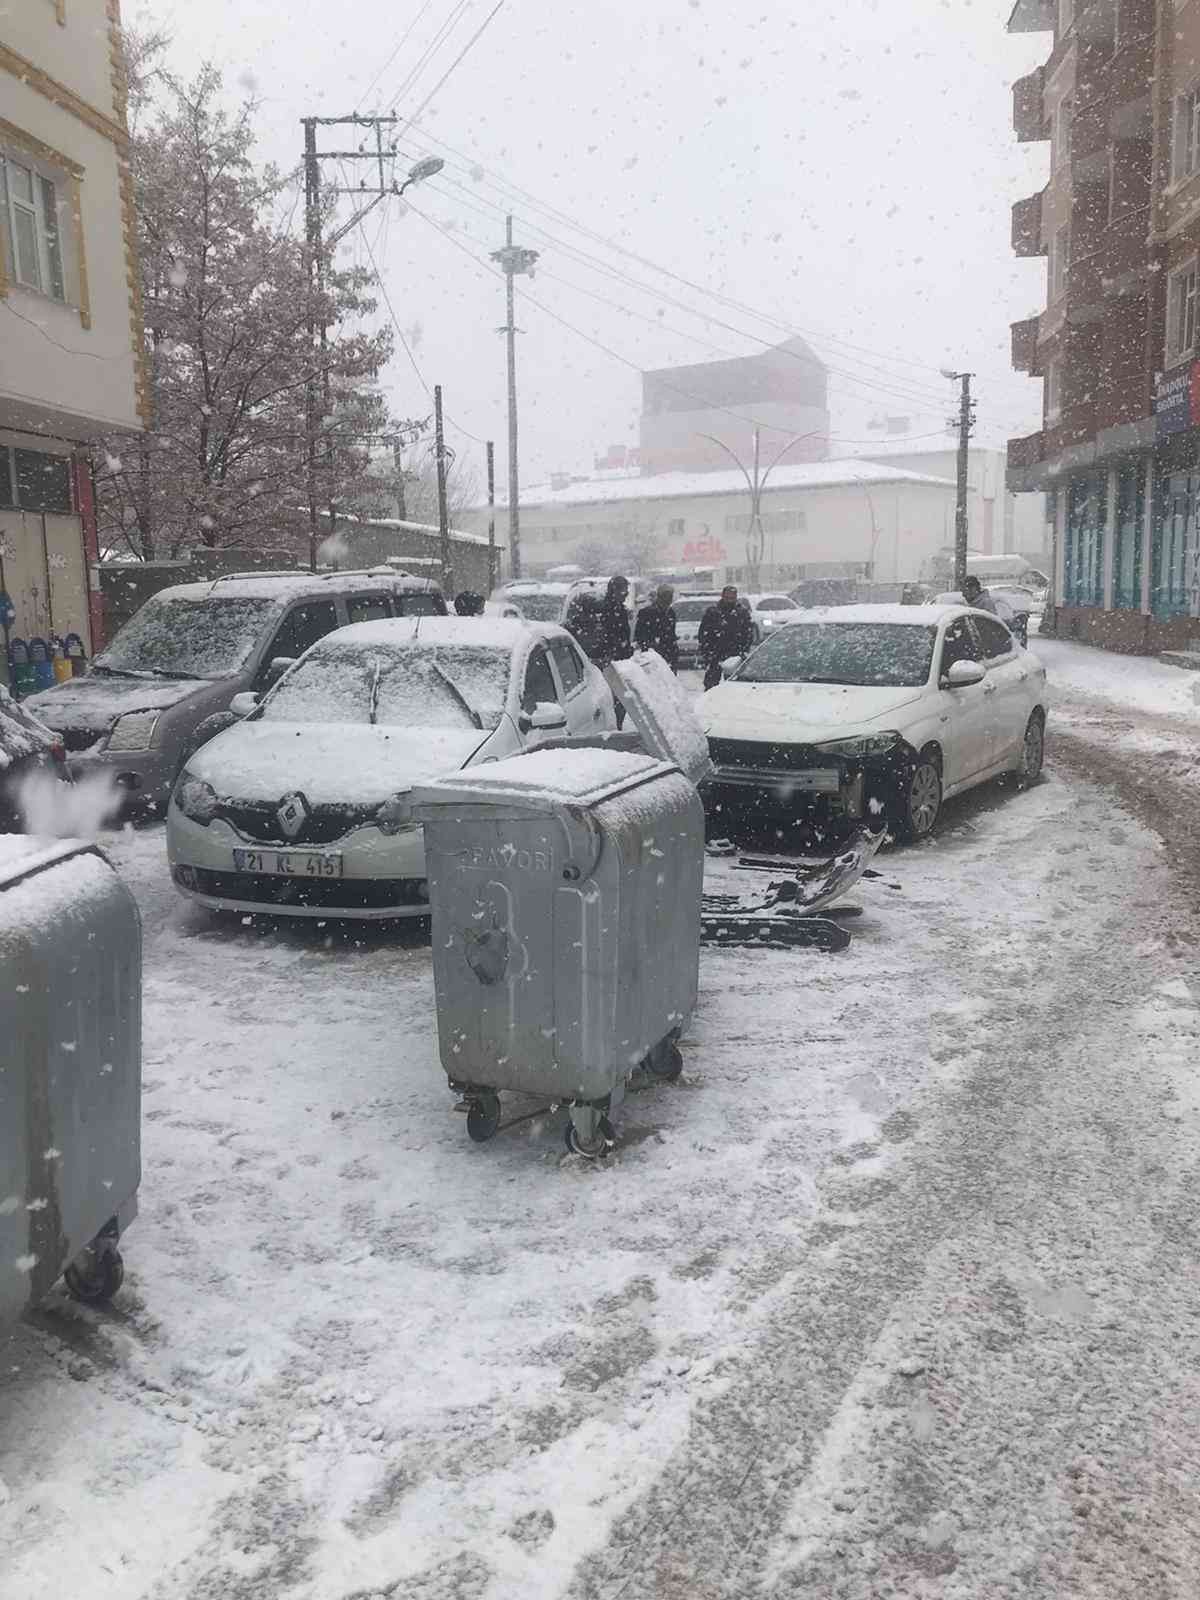 Yoğun kar yağışı beraberinde kazayı getirdi #van